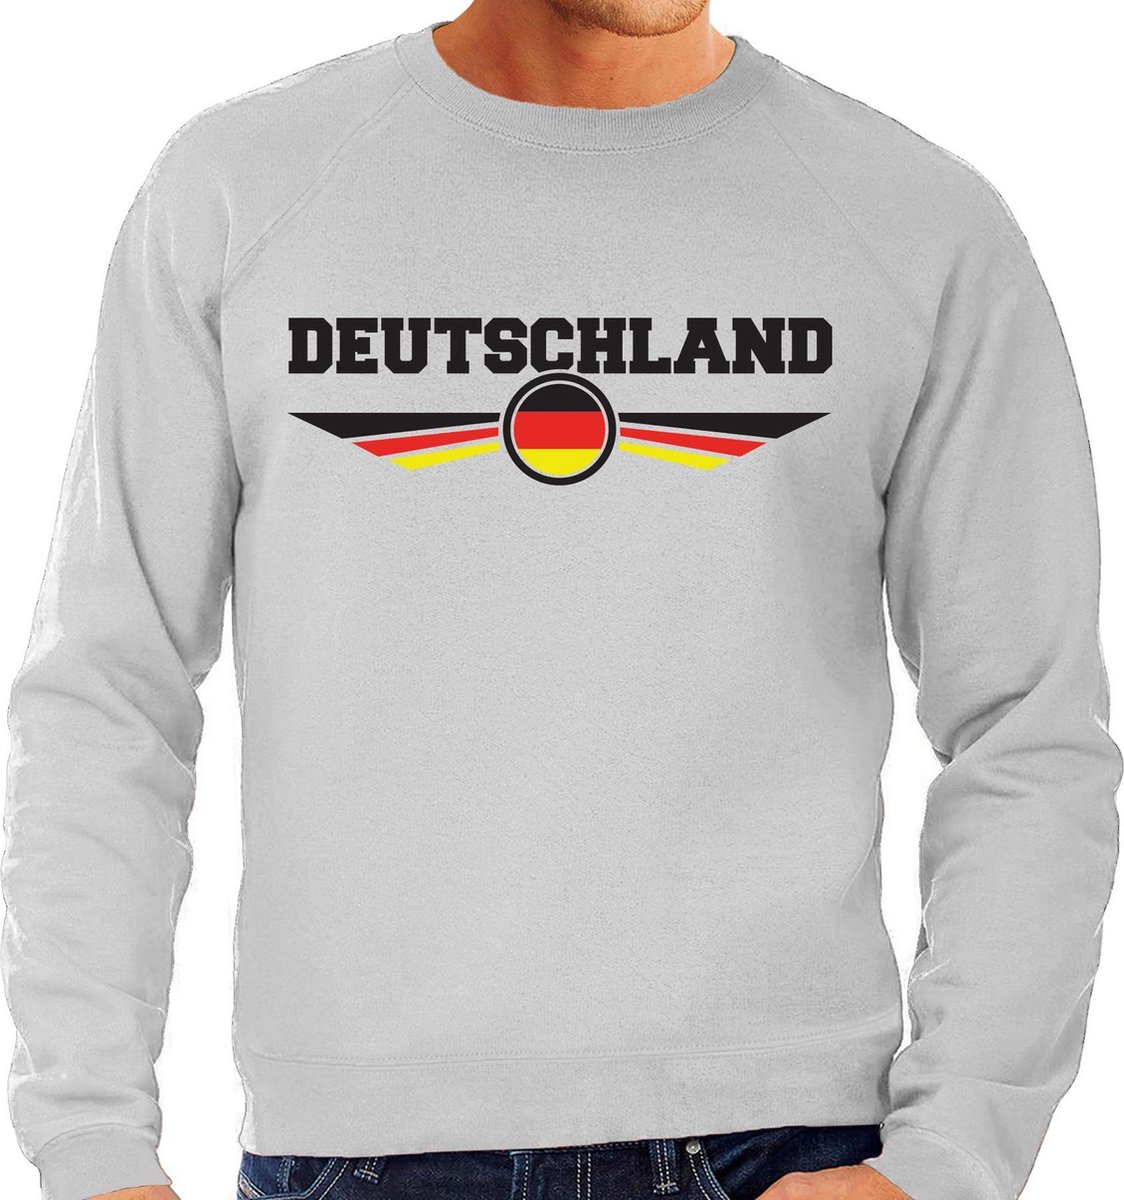 Duitsland / Deutschland landen sweater / trui grijs heren L